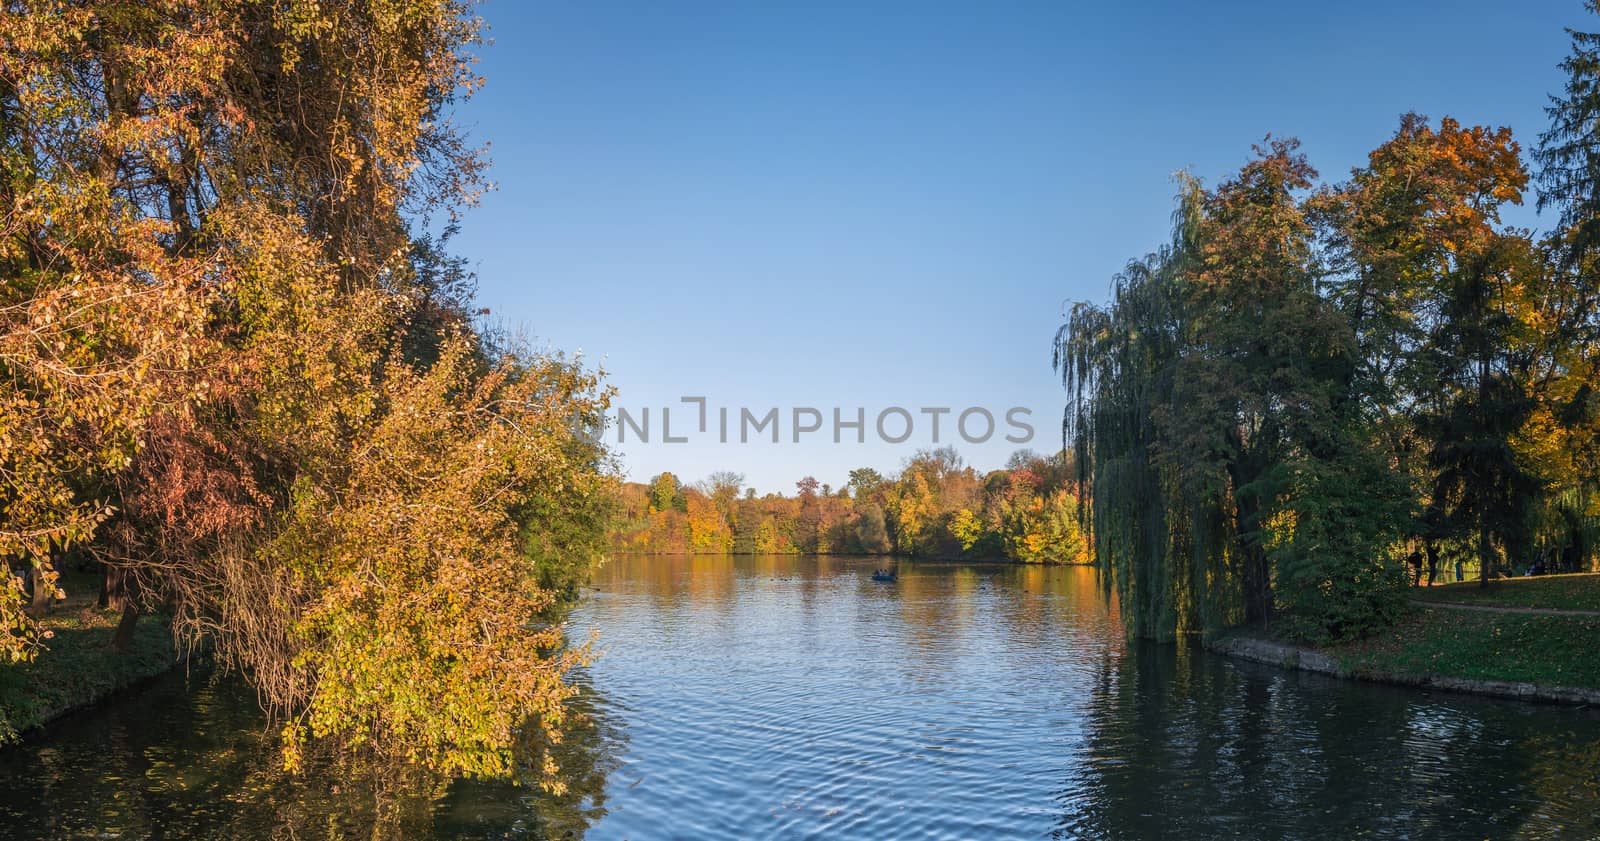 Uman, Ukraine - 10.13.2018. Amazing autumn at the Upper Pond in Sophia Park in Uman